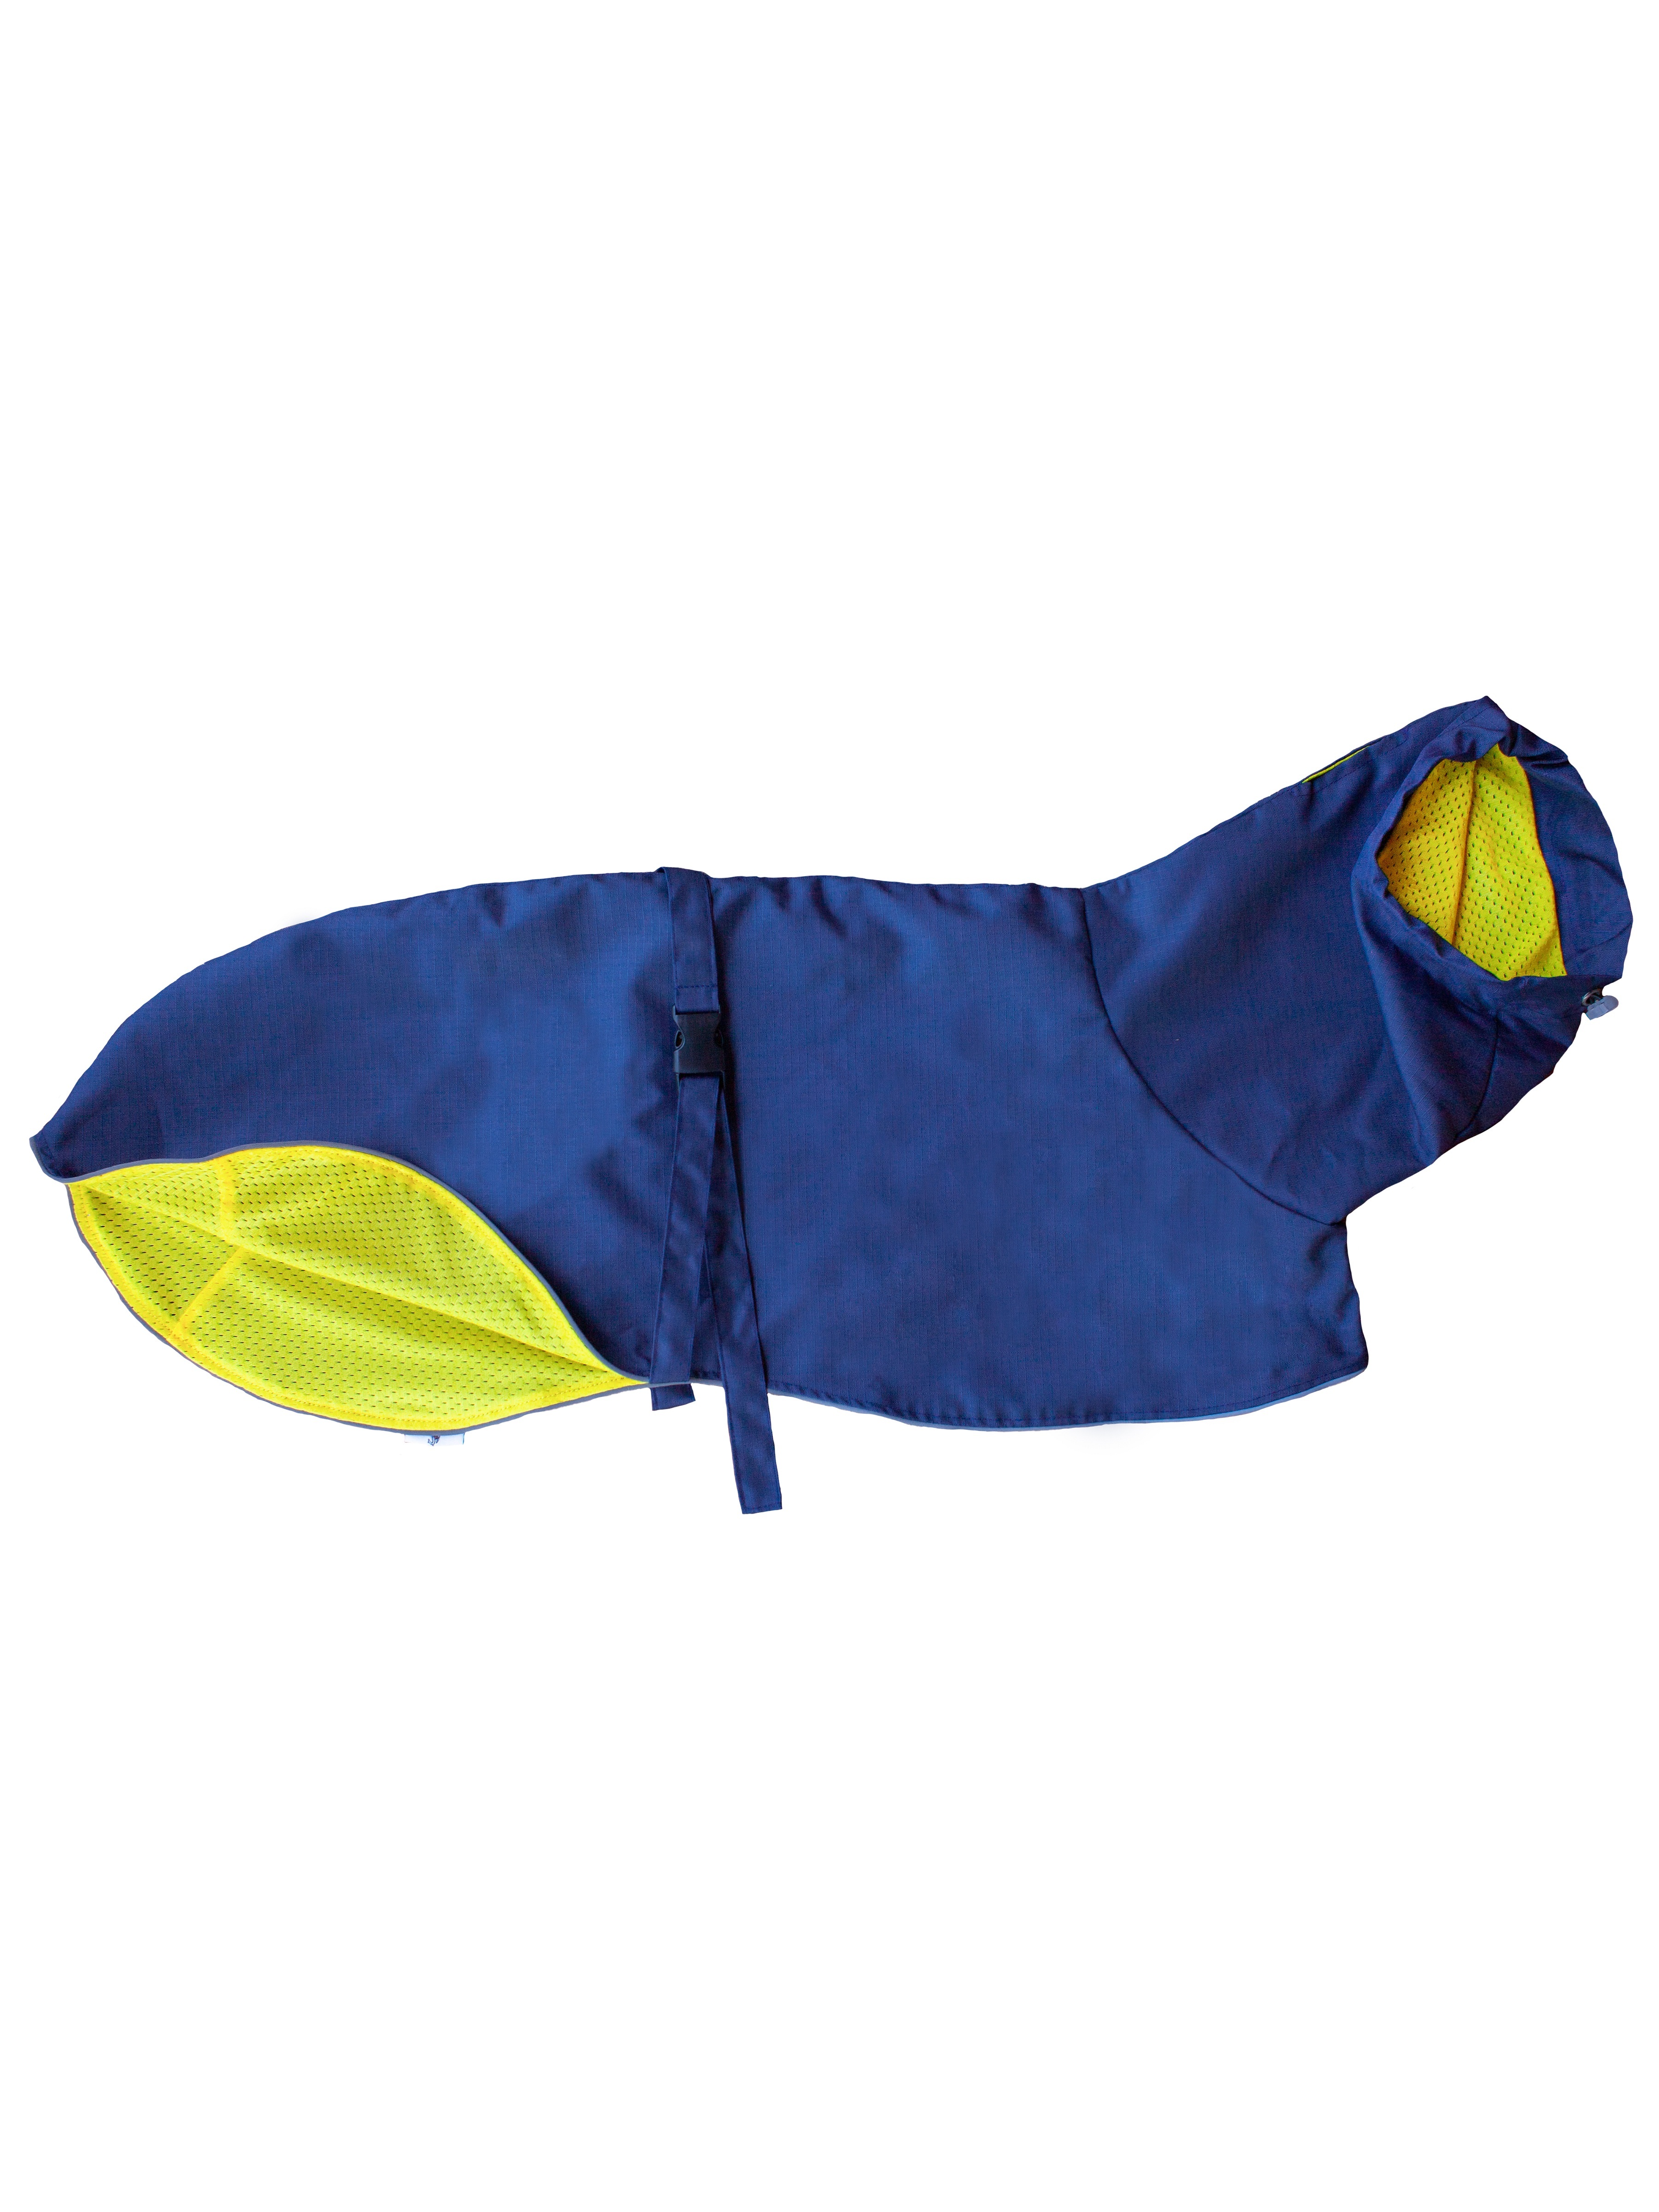 Дождевик для собак Монморанси, Уиппет, синий, желтый, длина спины 48 см